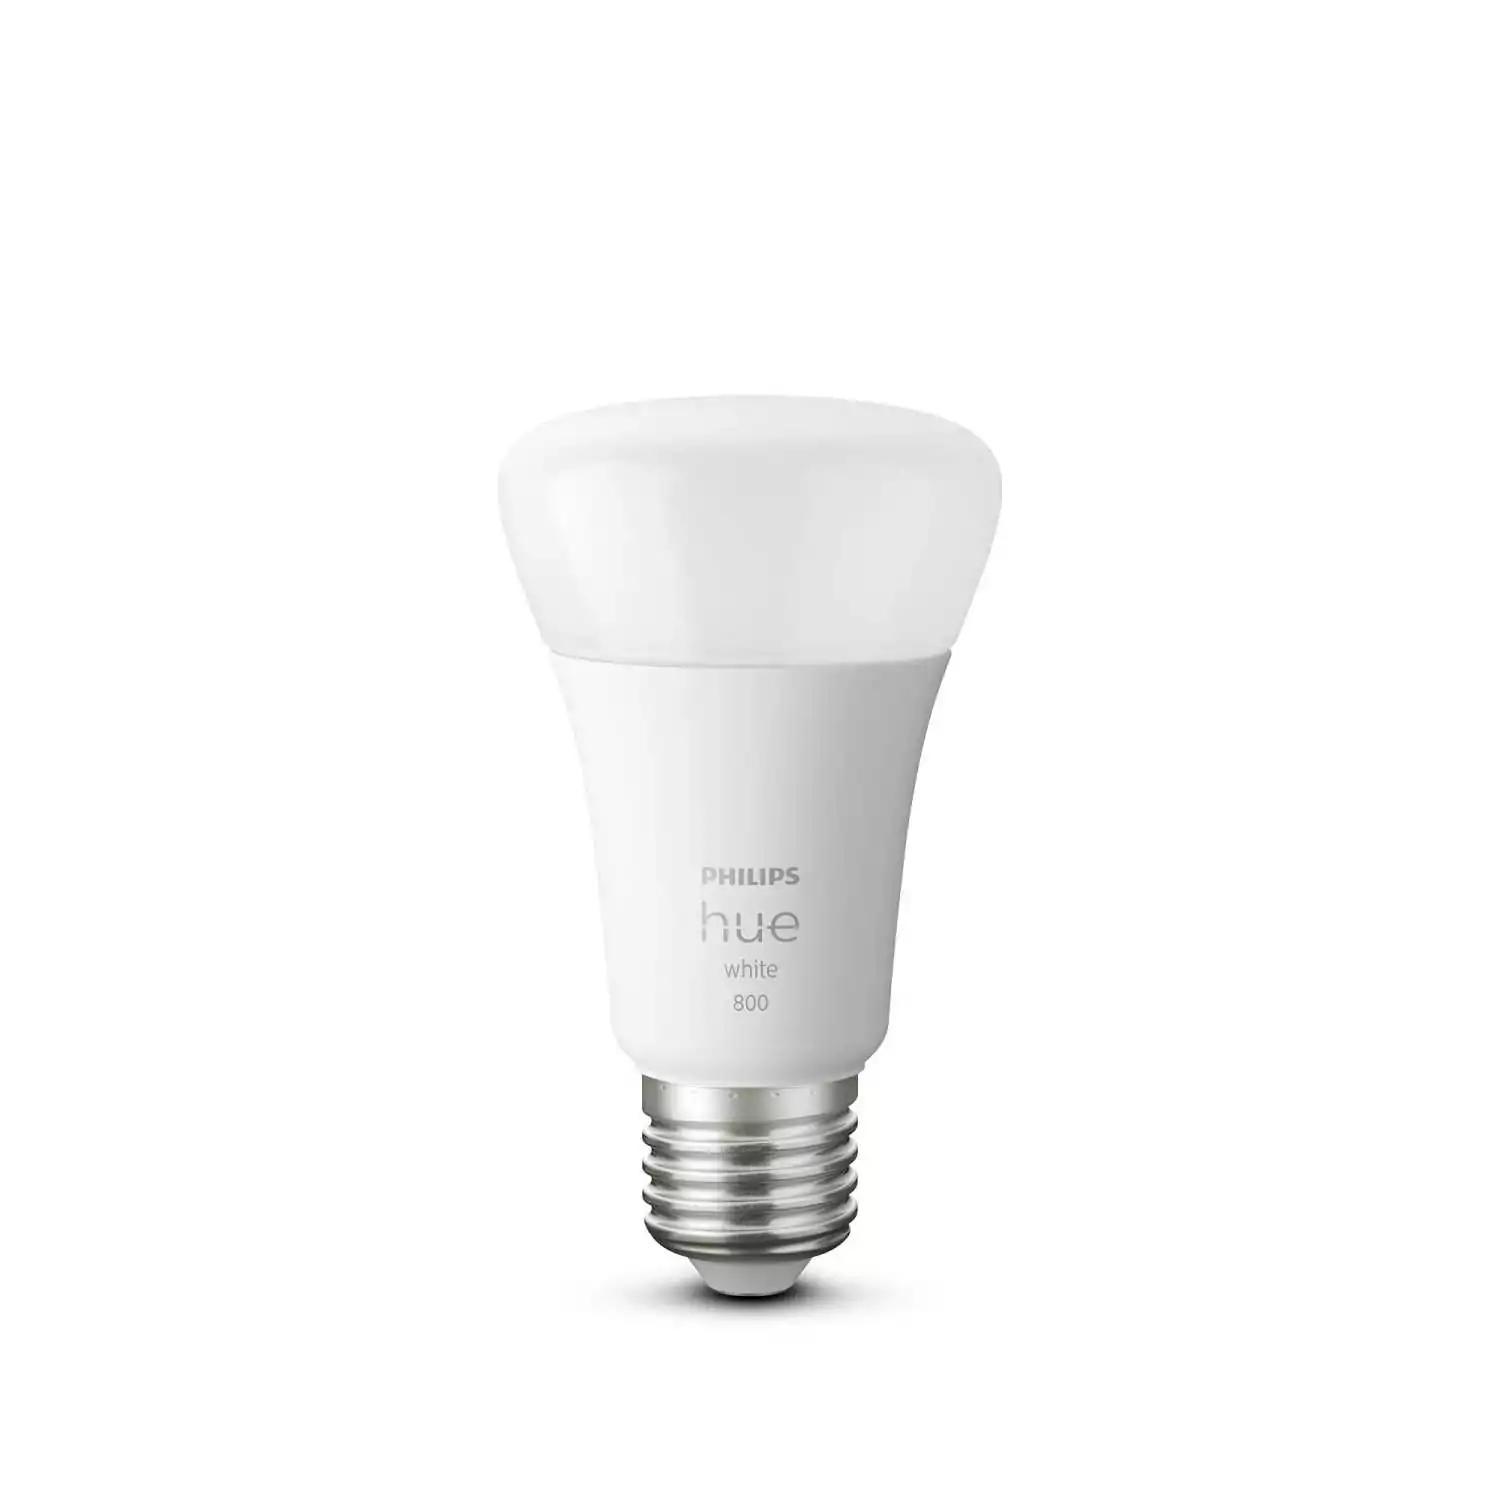 Комплект из 3 умных лампочек, блока управления и диммера Philips Hue, белый свет 3